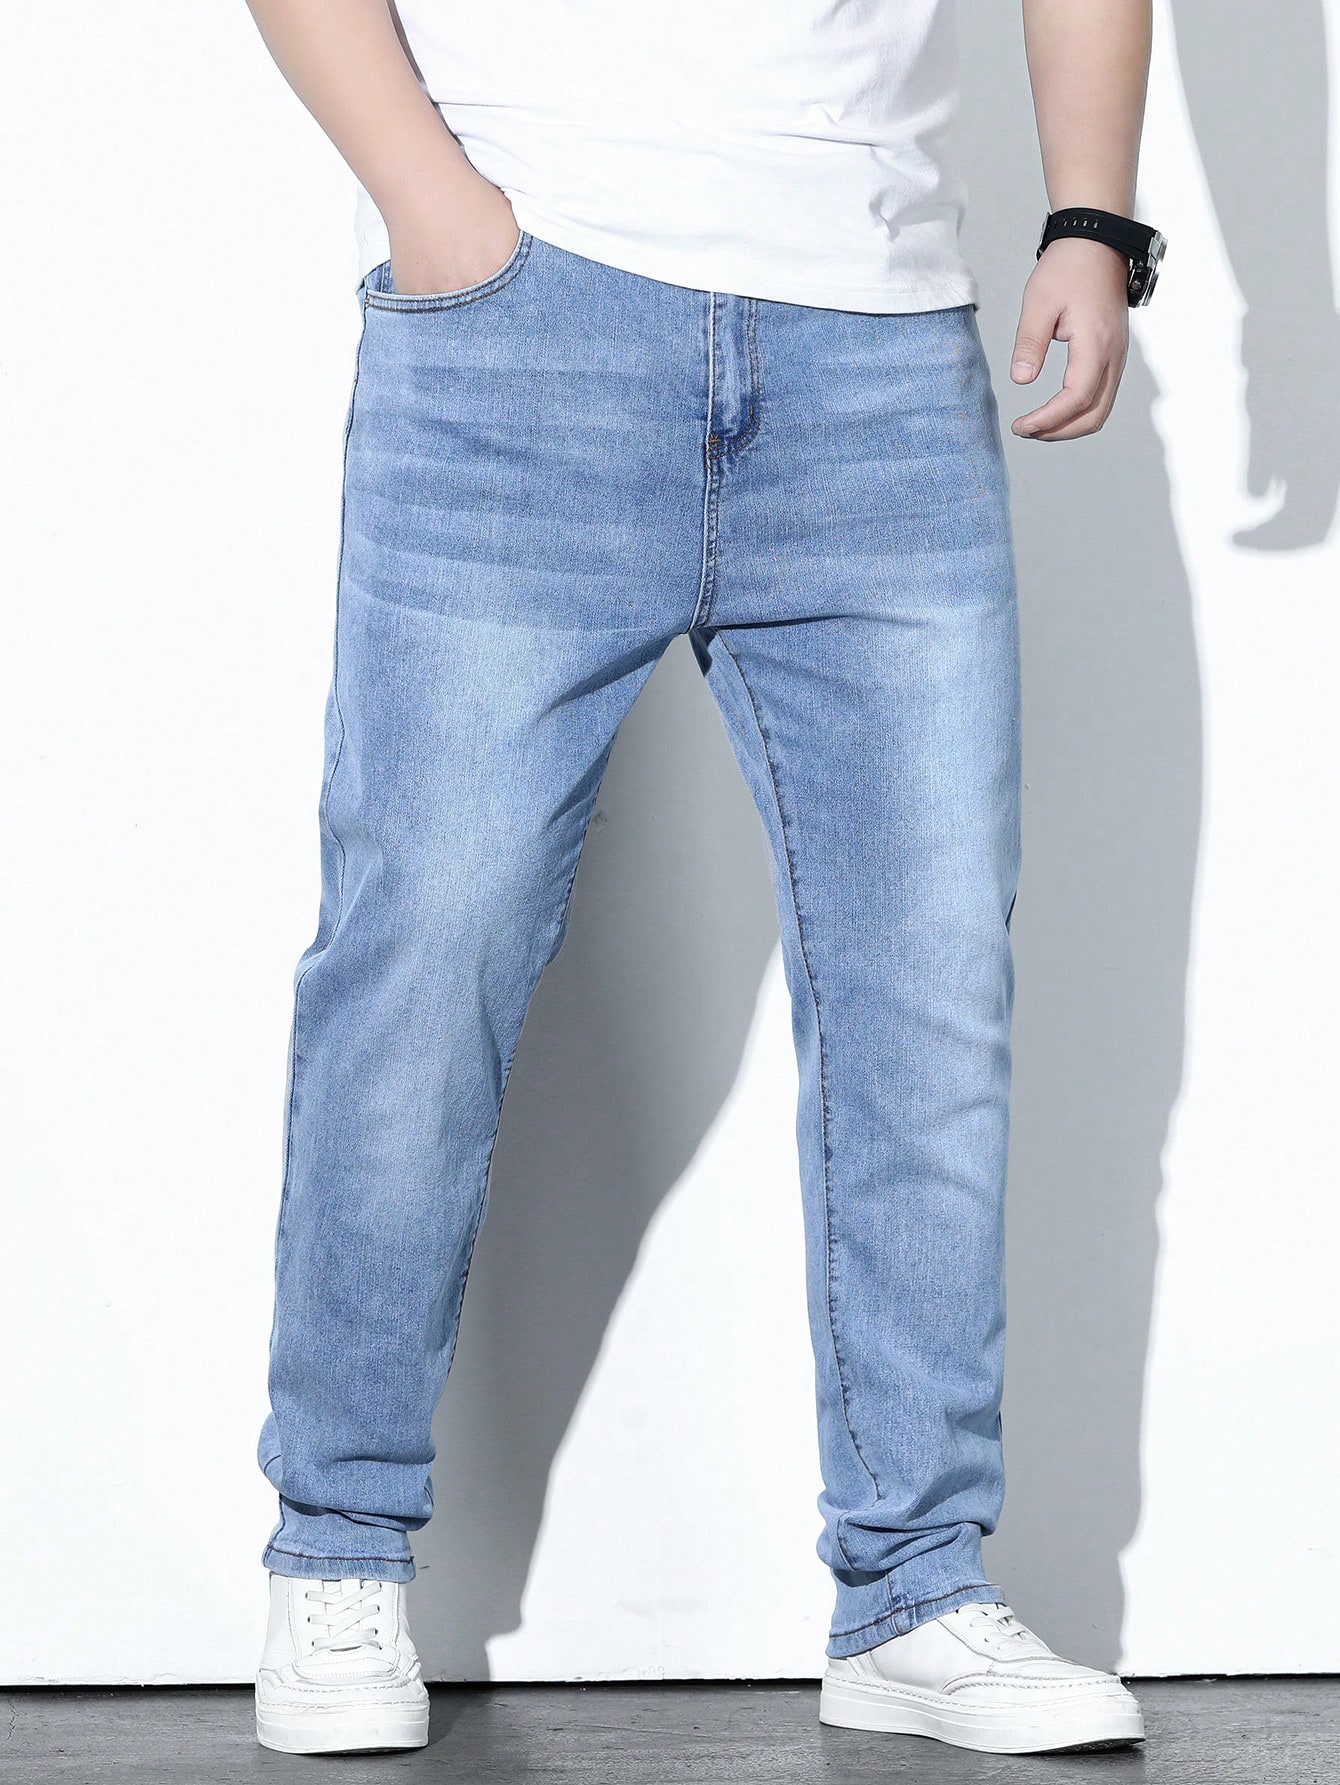 Мужские джинсы Manfinity LEGND больших размеров с застежкой-молнией и карманами, легкая стирка мужские джинсы джинсы с рельефной молнией облегающие брюки мужские джинсы карандаш джинсы скинни для мужчин